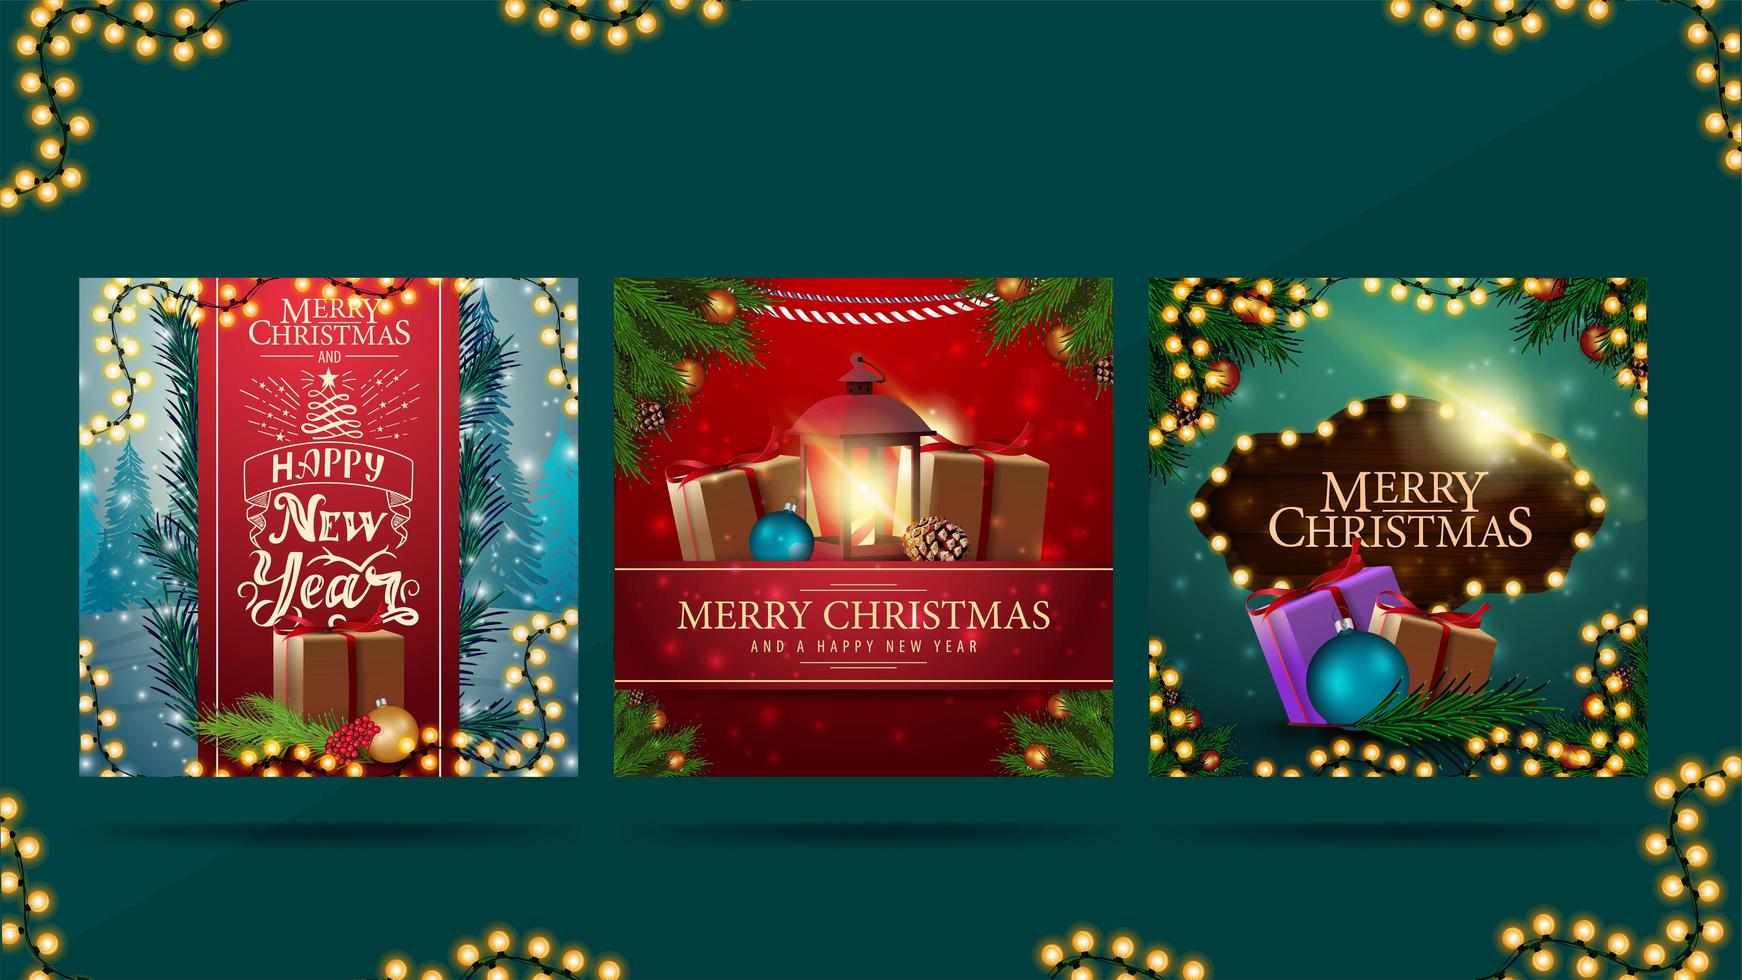 prettige kerstdagen en een gelukkig nieuwjaar, groet vierkante ansichtkaarten met kerstcadeaus, slingers, frame van kerstboomtakken en mooie letters vector